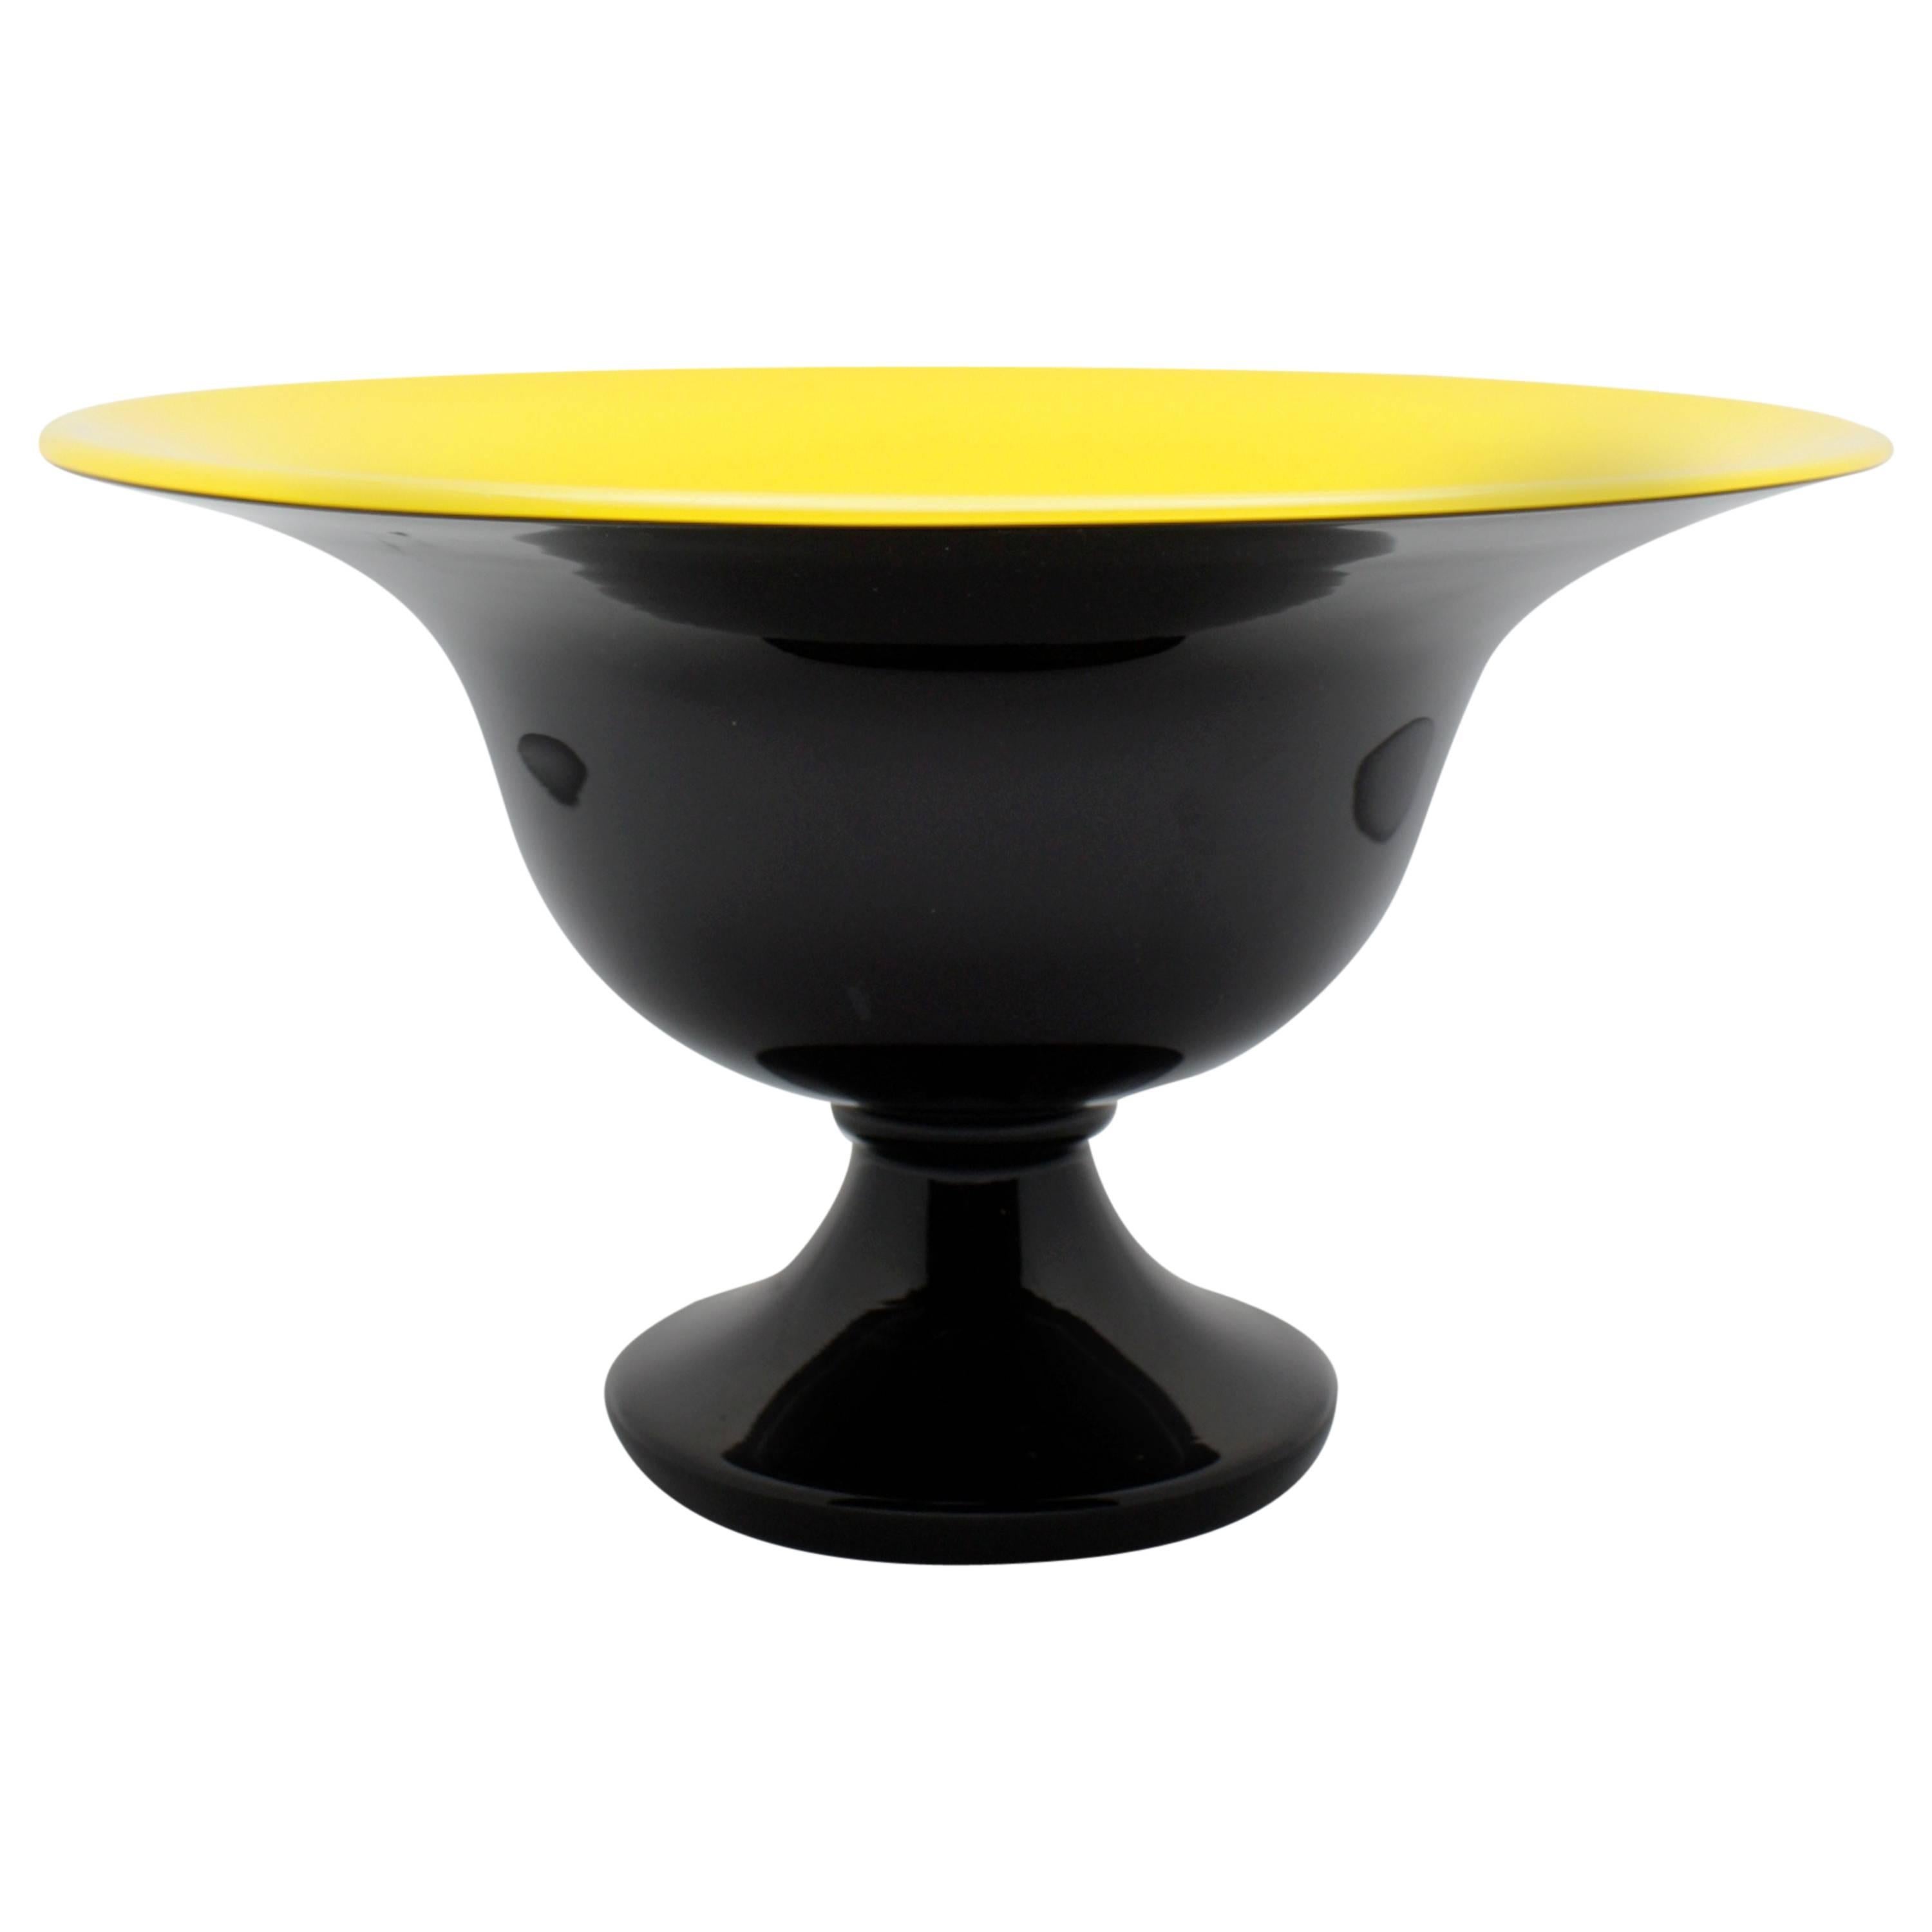 Loetz "Michael Powolny" Art Deco Yellow and Black Vase For Sale